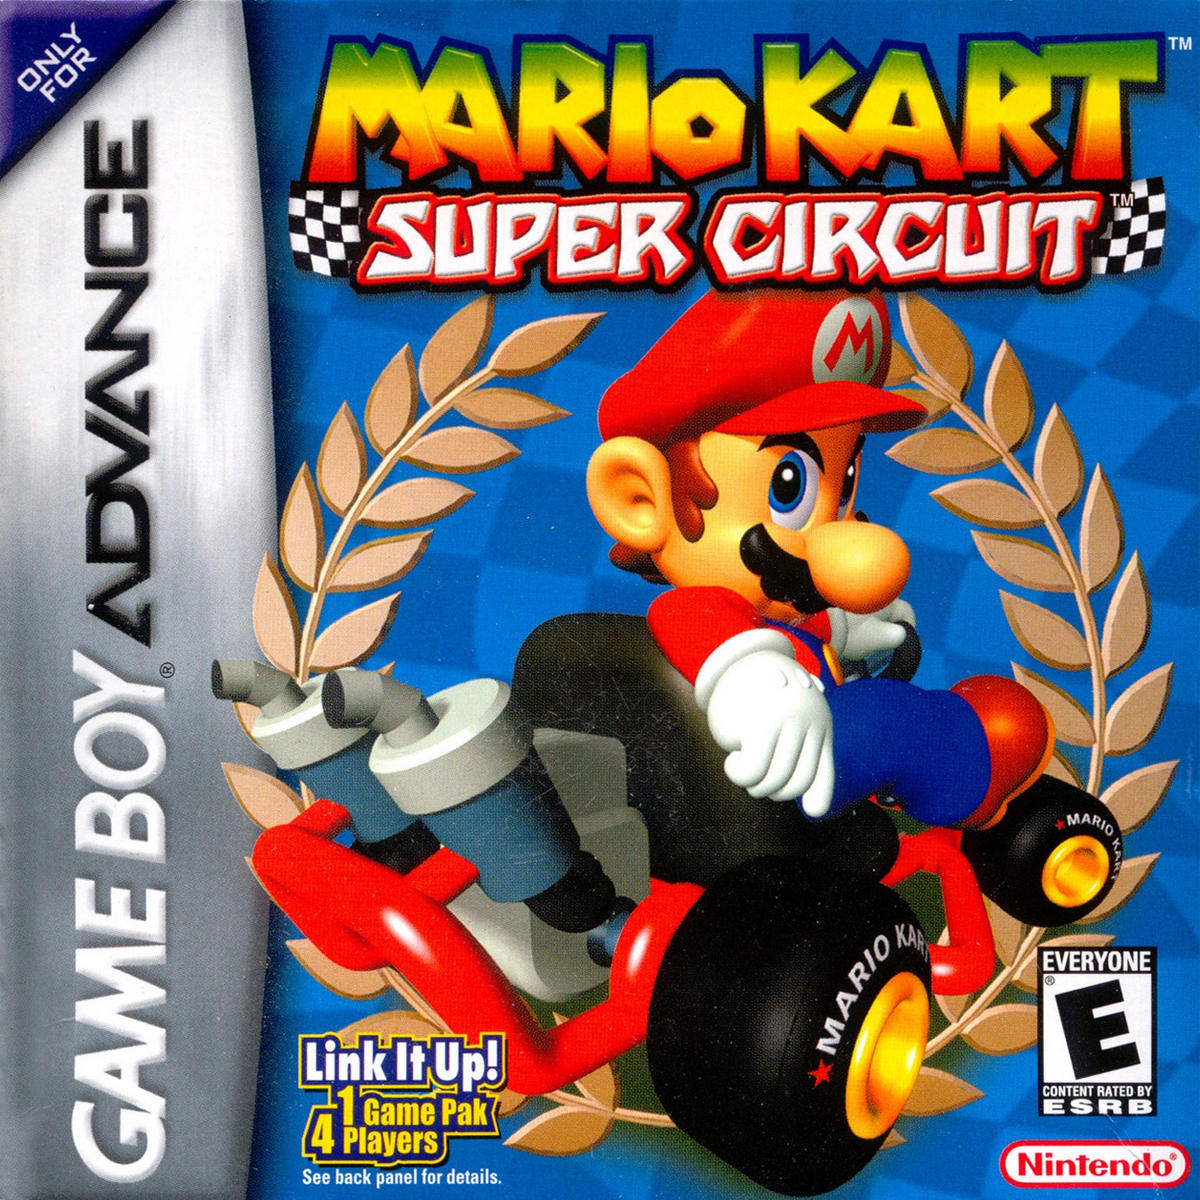 Mario Circuit (Mario Kart 8) - Super Mario Wiki, the Mario